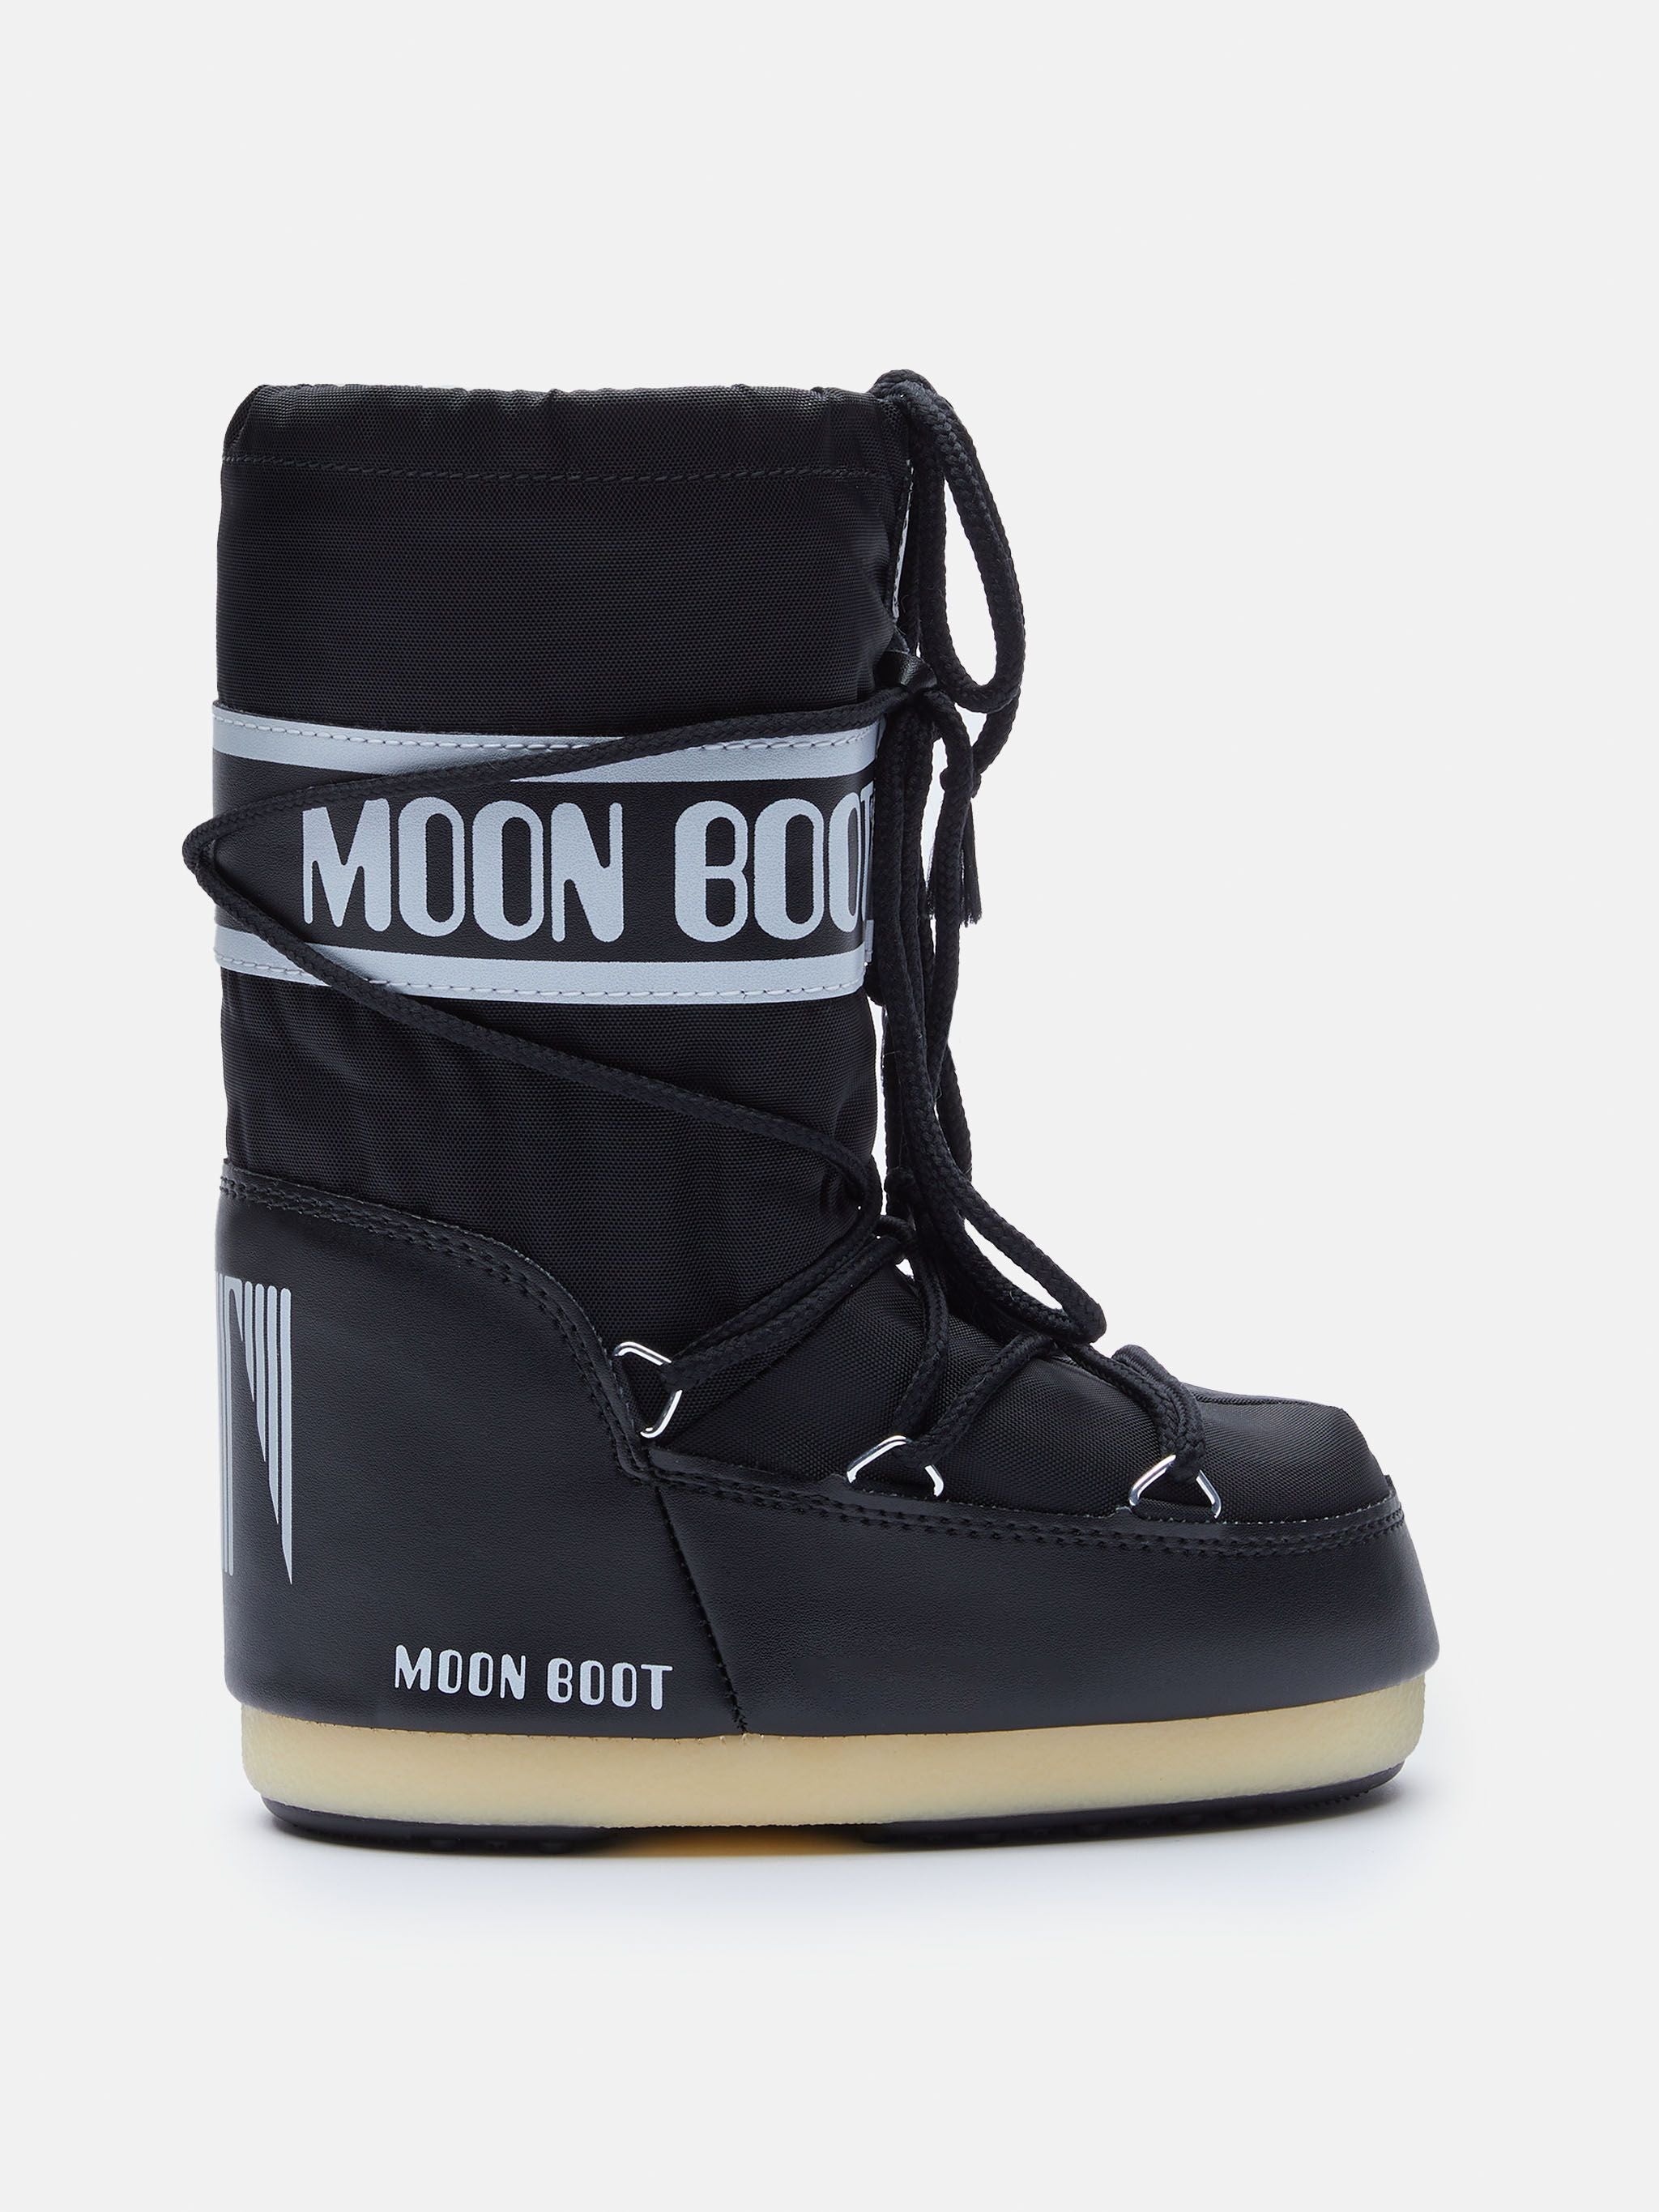 Moon Boots - Nylon Kids Snow Boots